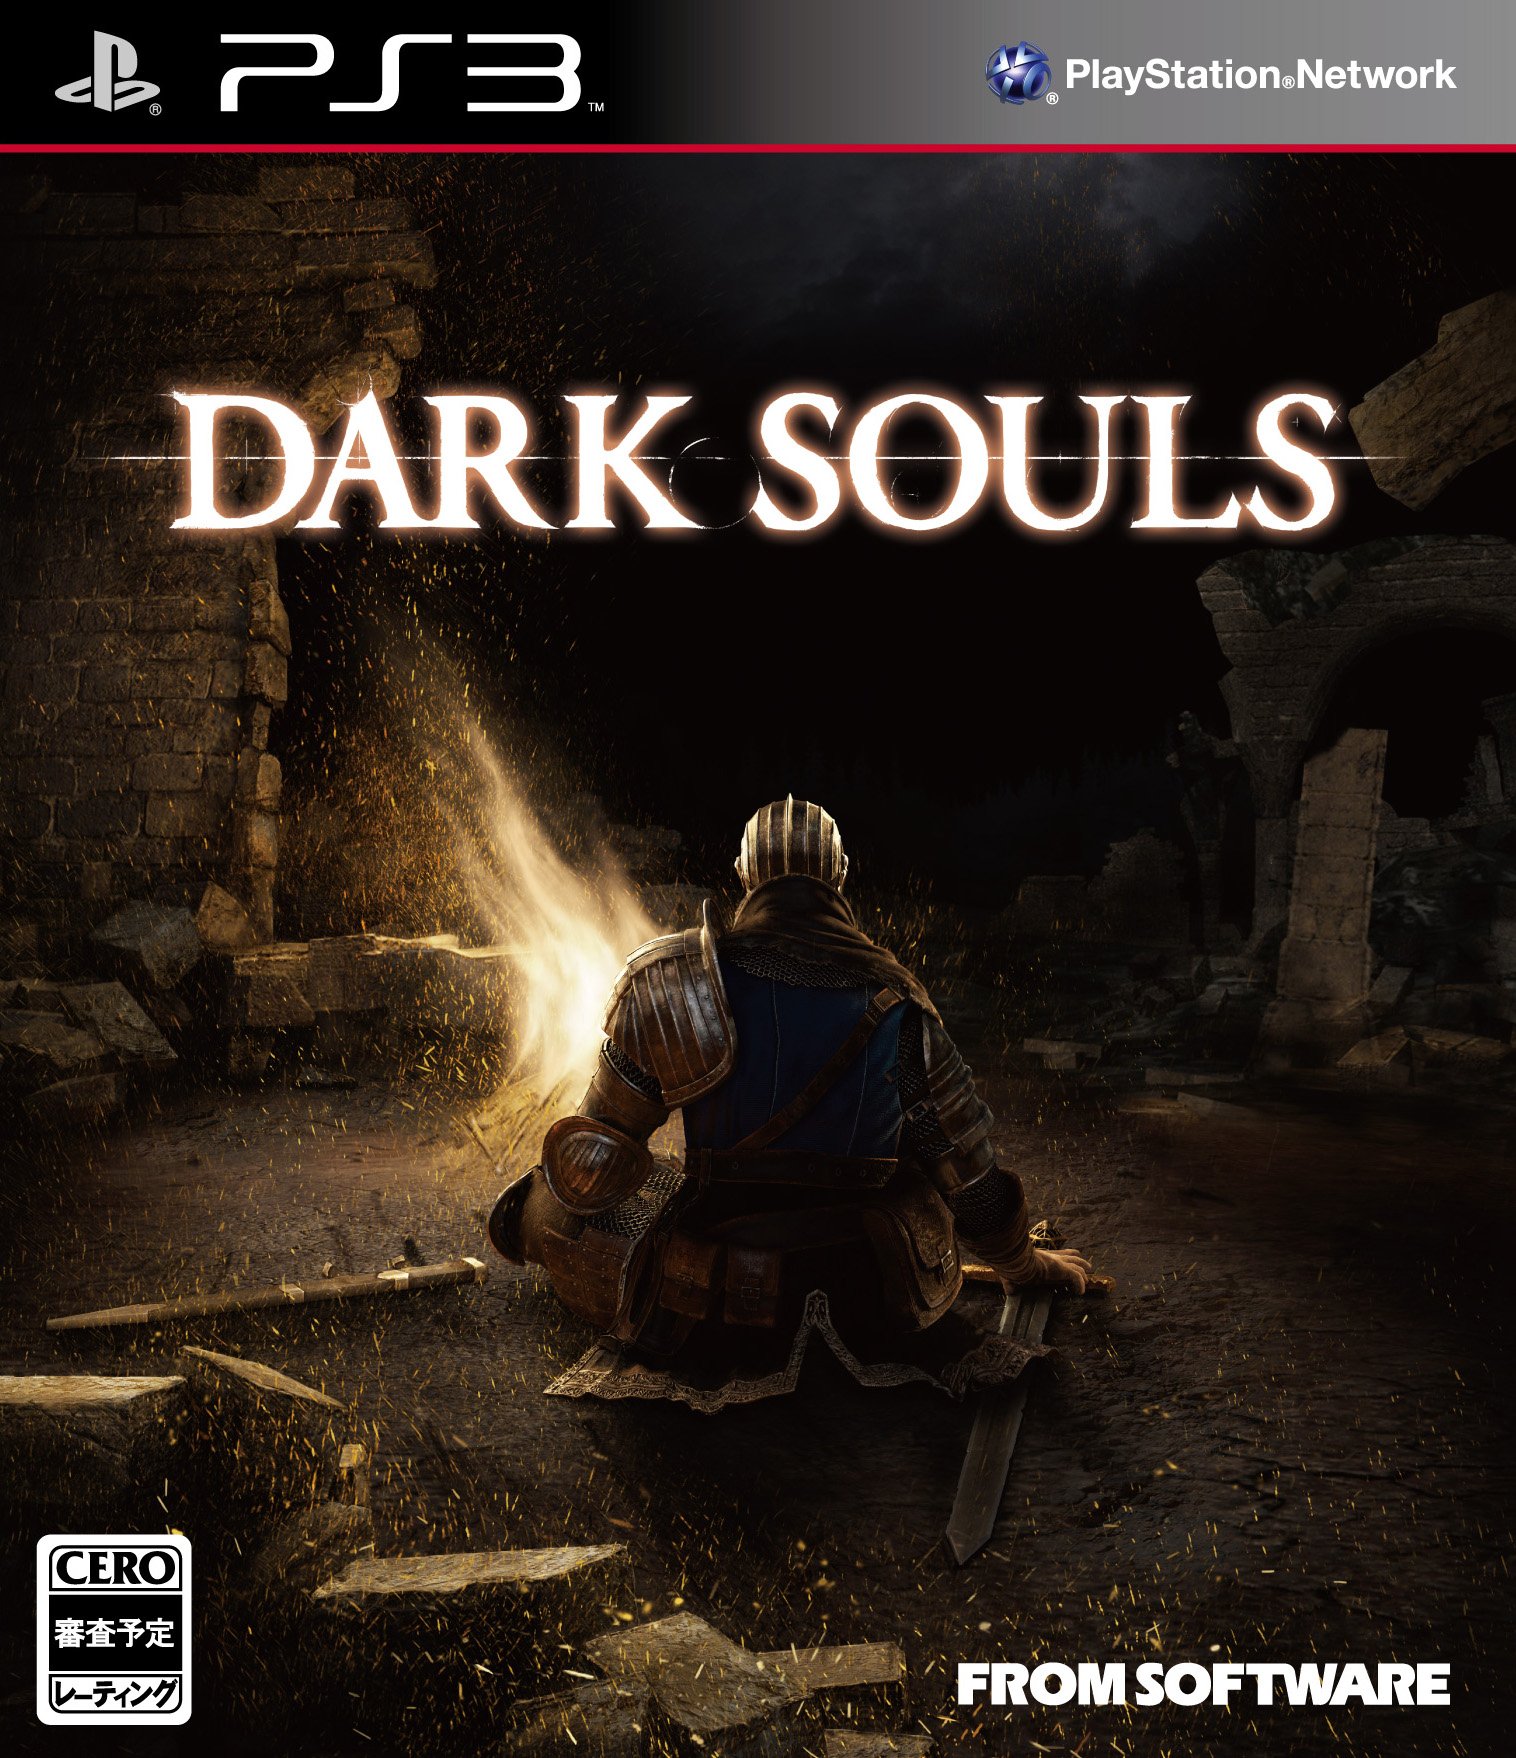 سری Dark Souls بیش از ۸ میلیون نسخه در جهان فروش داشته است 1